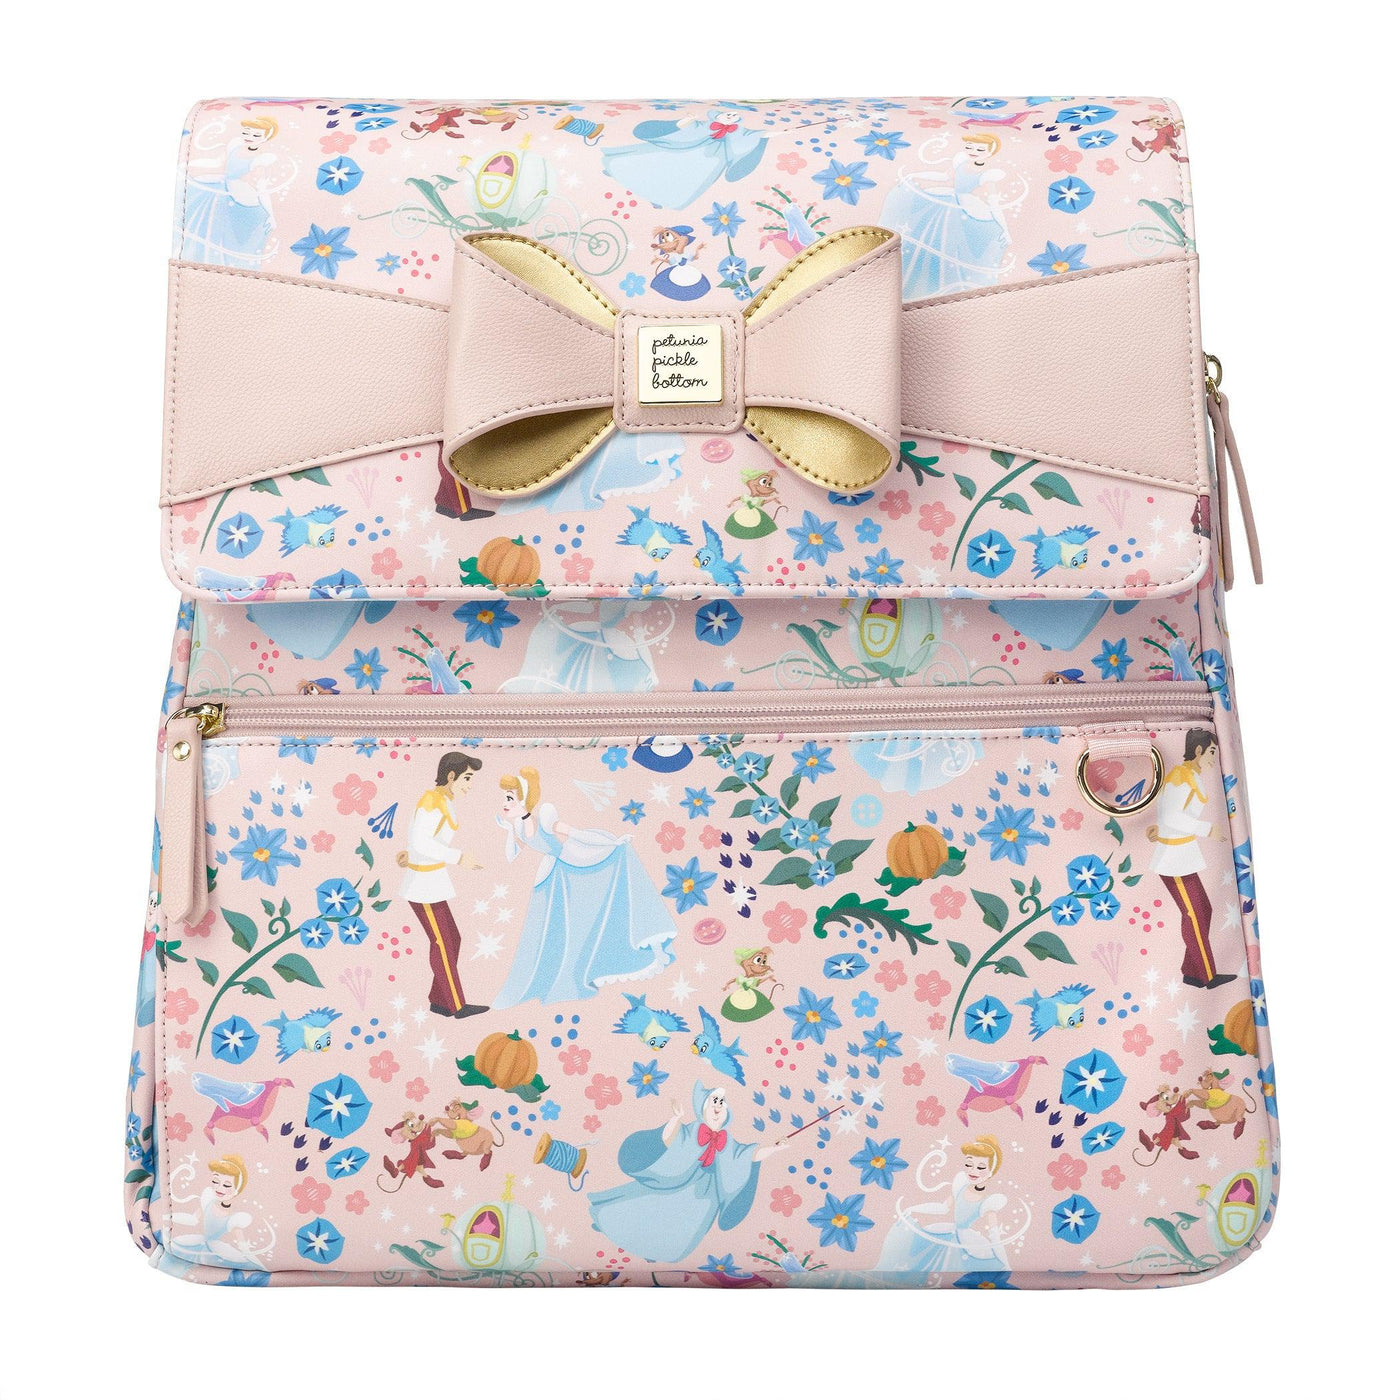 Meta Backpack Diaper Bag in Disney's Cinderella-Diaper Bags-Petunia Pickle Bottom